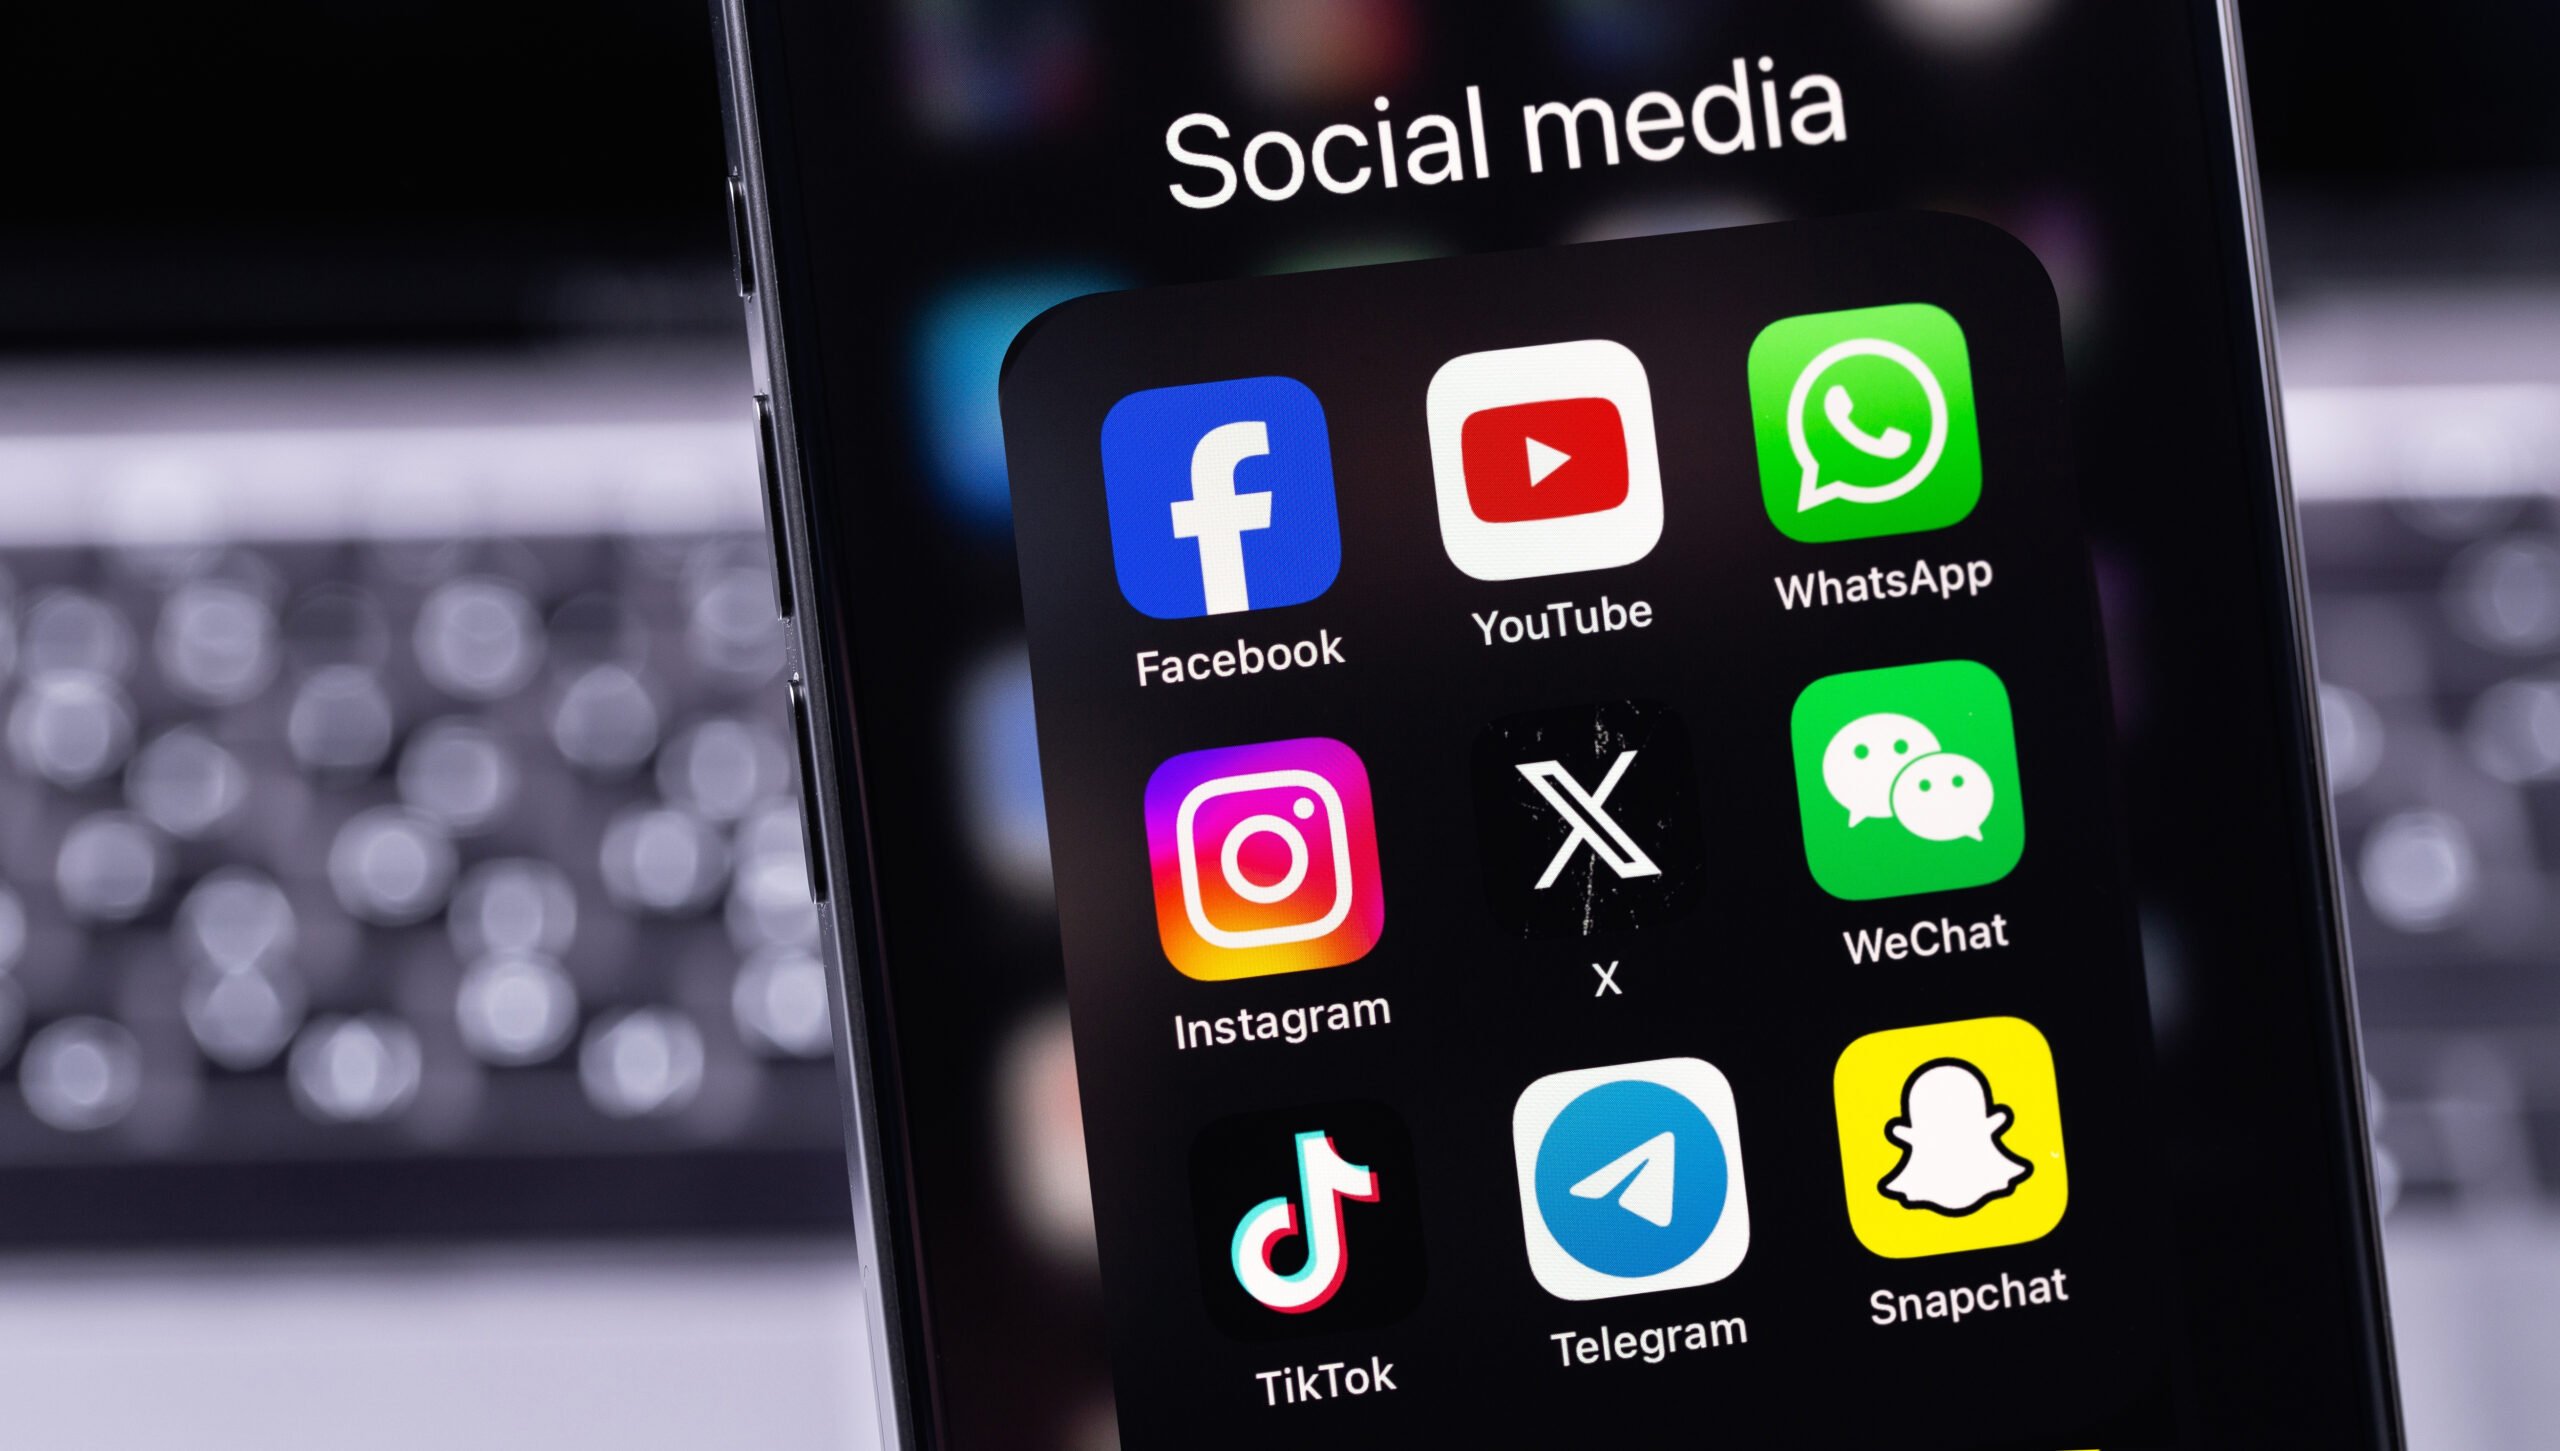 Ikony aplikacji mediów społecznościowych na ekranie smartfona, w tym Facebook, YouTube, WhatsApp, Instagram, X, WeChat, TikTok, Telegram i Snapchat.